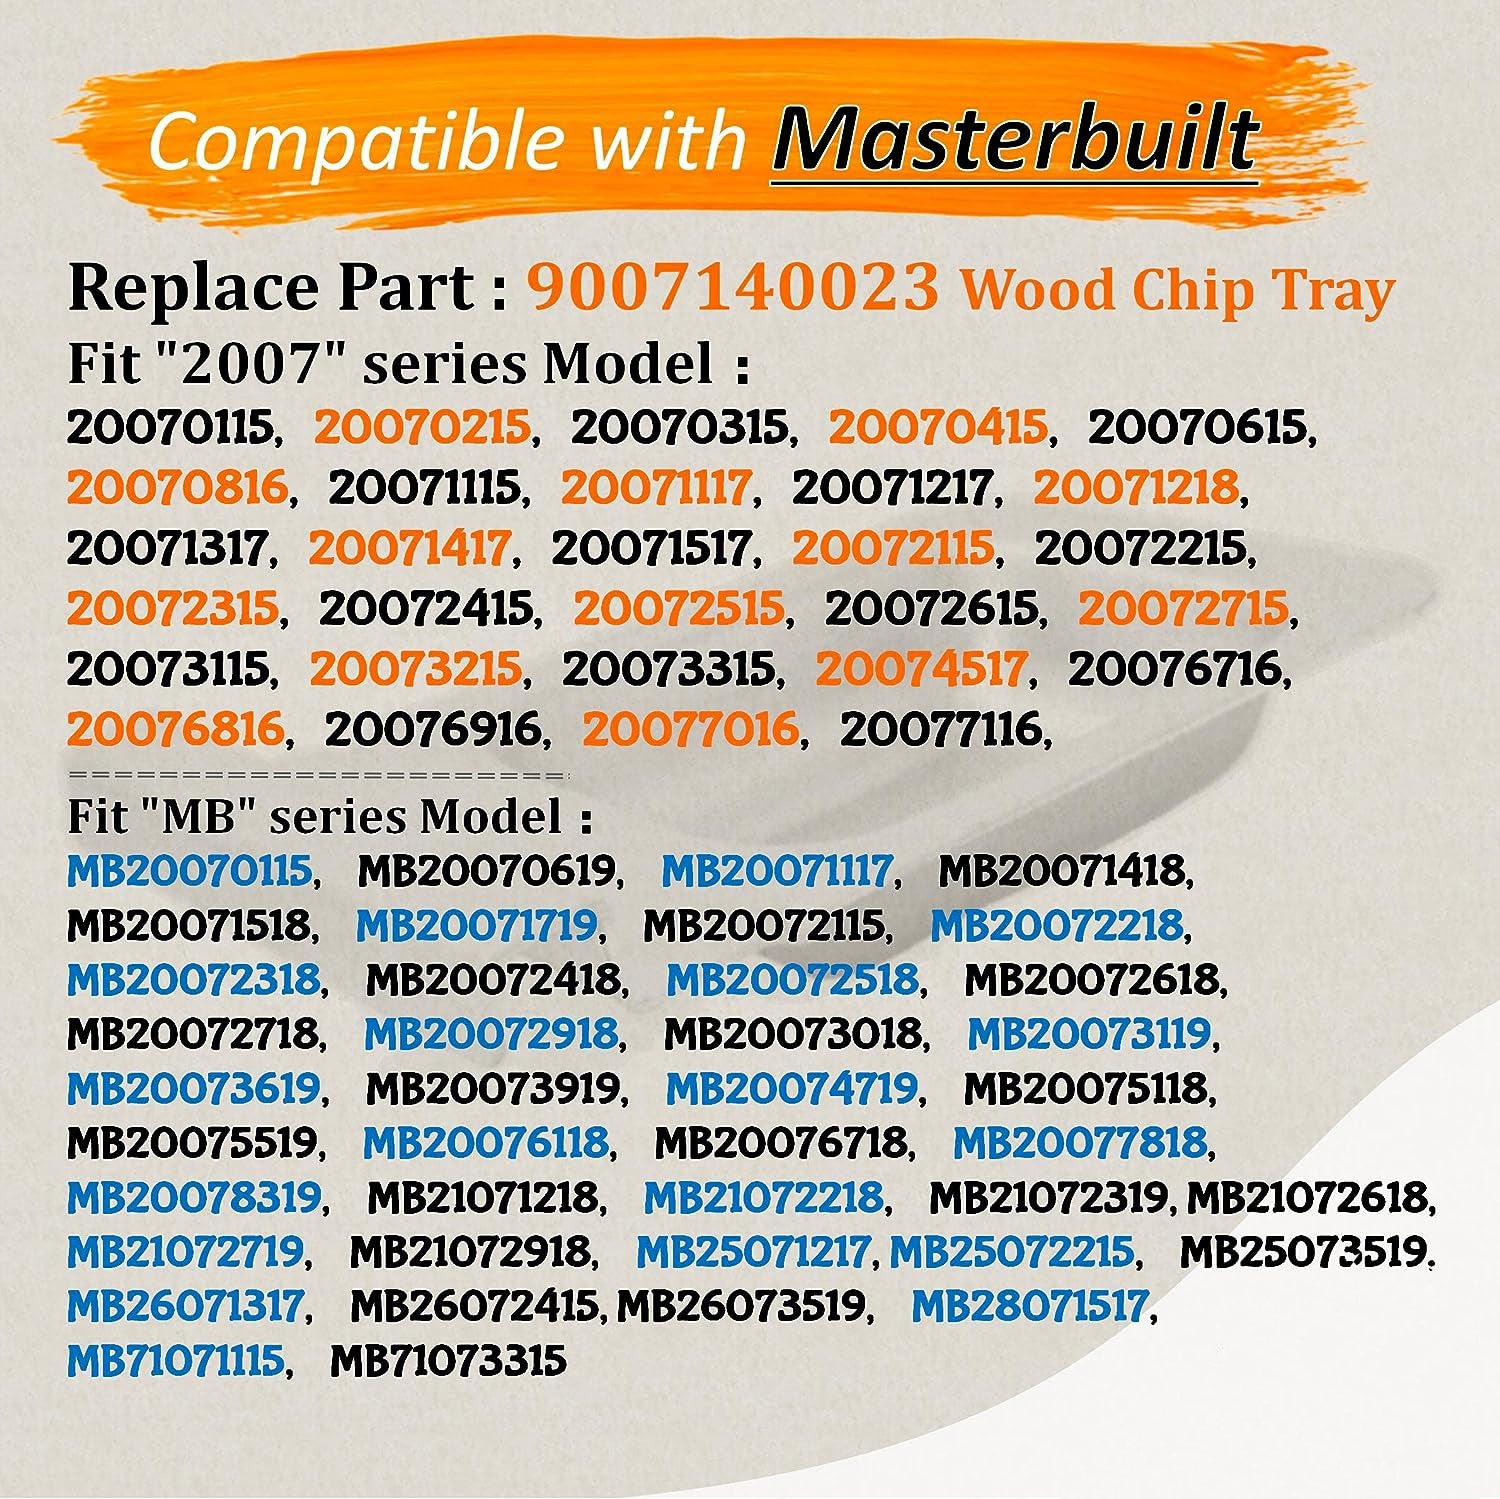 Masterbuilt 20076716 Parts